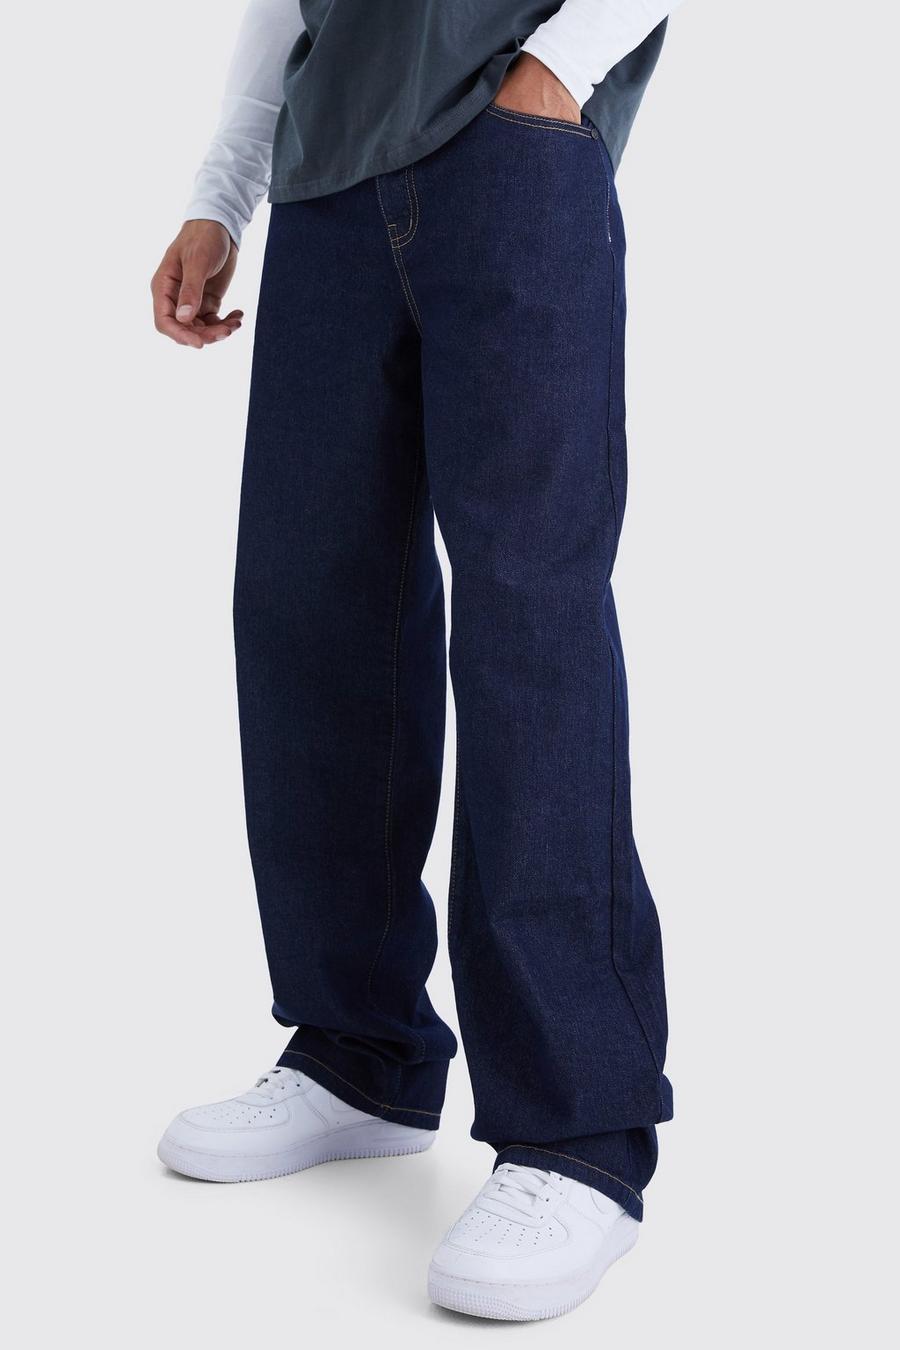 Indigo blue Tall Onbewerkte Baggy Jeans